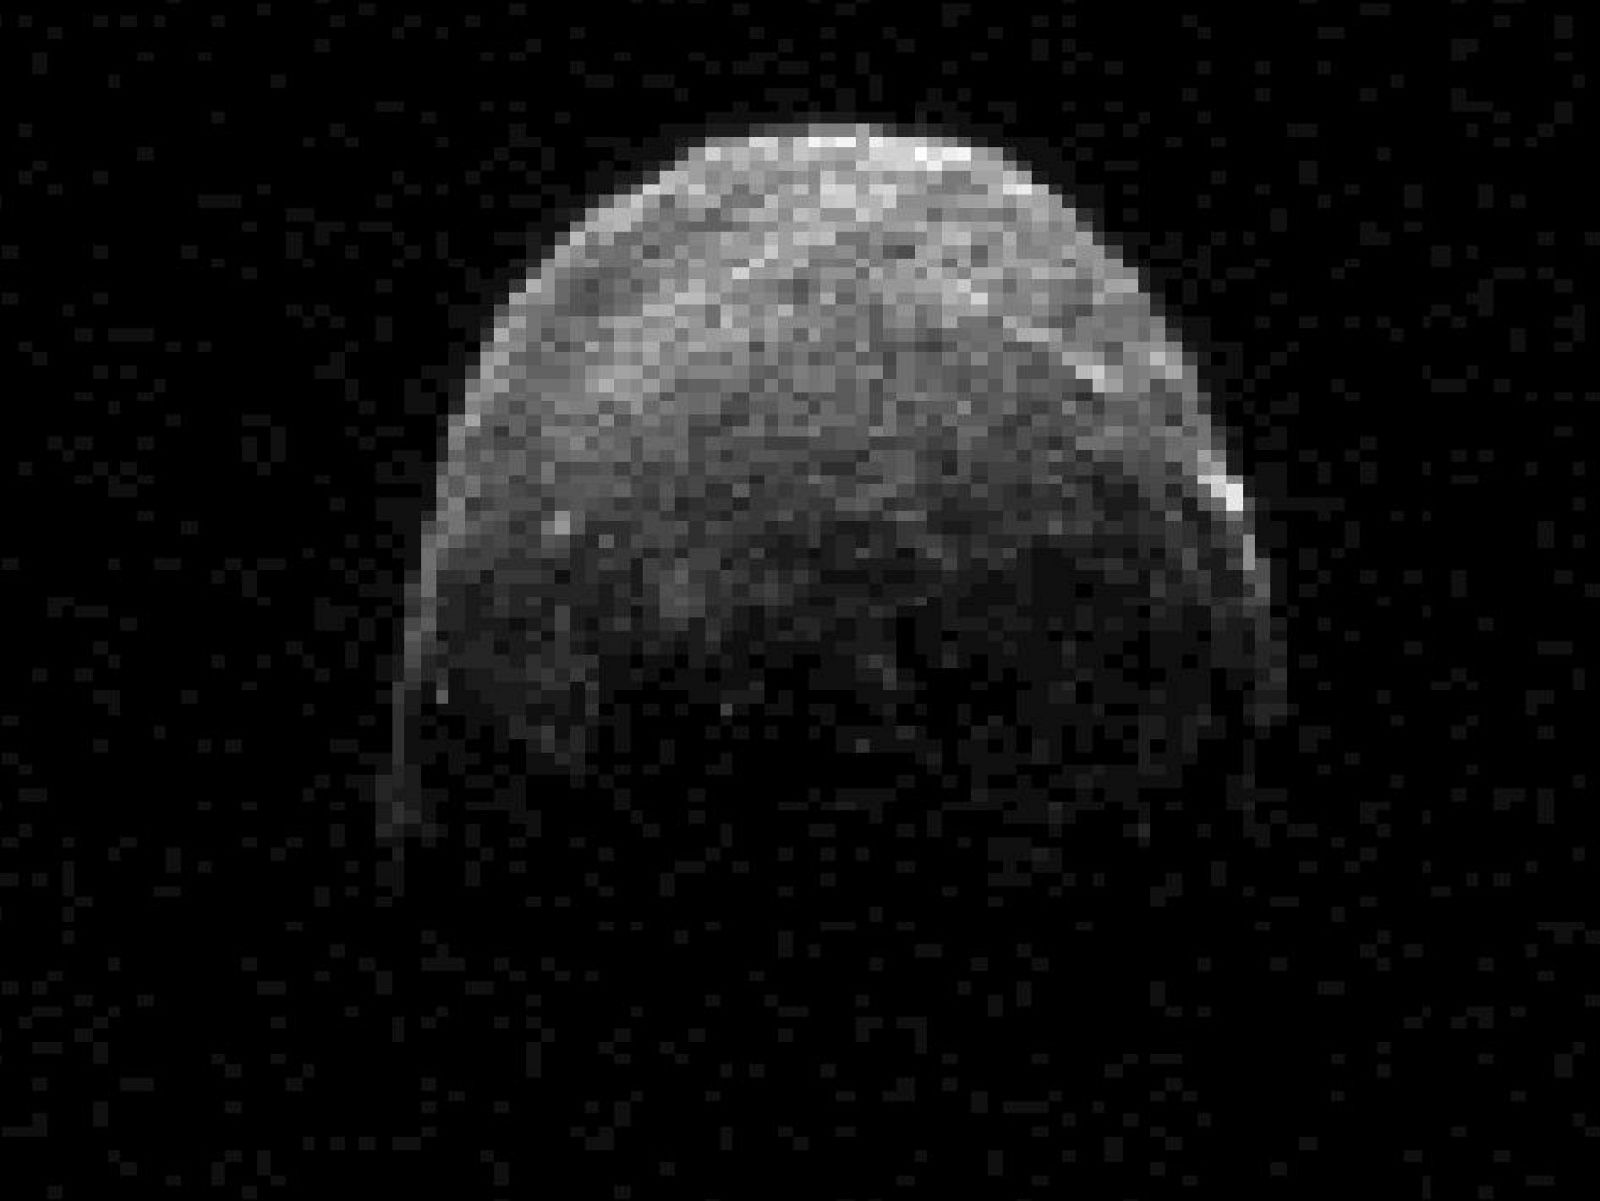 Imagen del asteroide 2005 YU55 captado por las antenas de la NASA